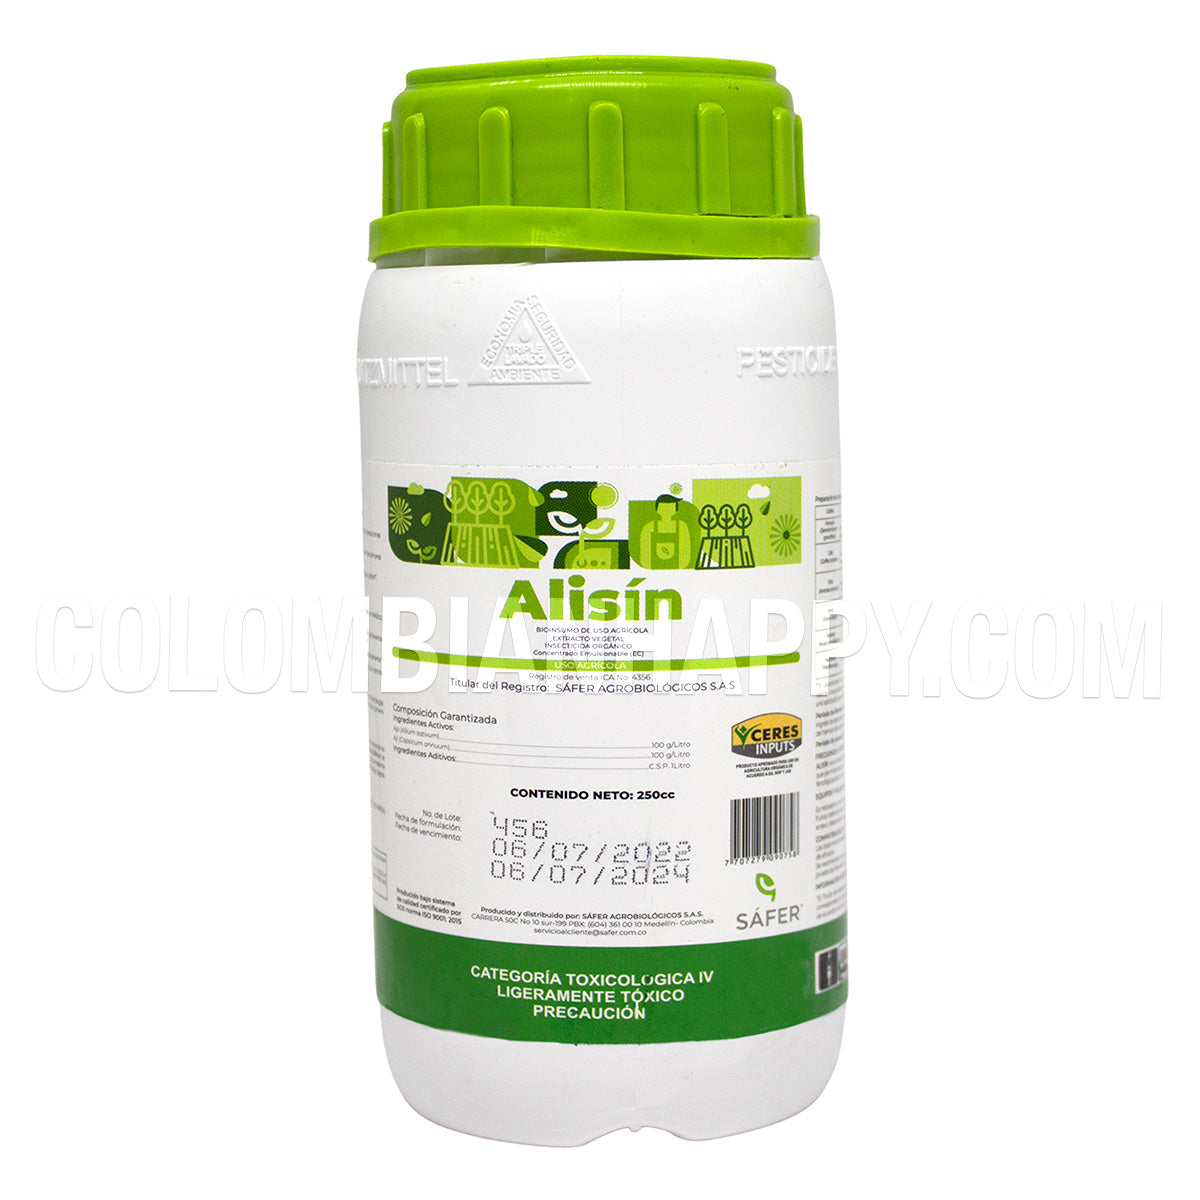 ALISIN es un insecticida biológico, cuyos ingredientes activos son los extractos de ajo-ají.  El rango de su efecto protector va desde repelencia, disuasión de la alimentación y oviposición, hasta toxicidad aguda e interferencia con el crecimiento y desarrollo de los insectos plaga.